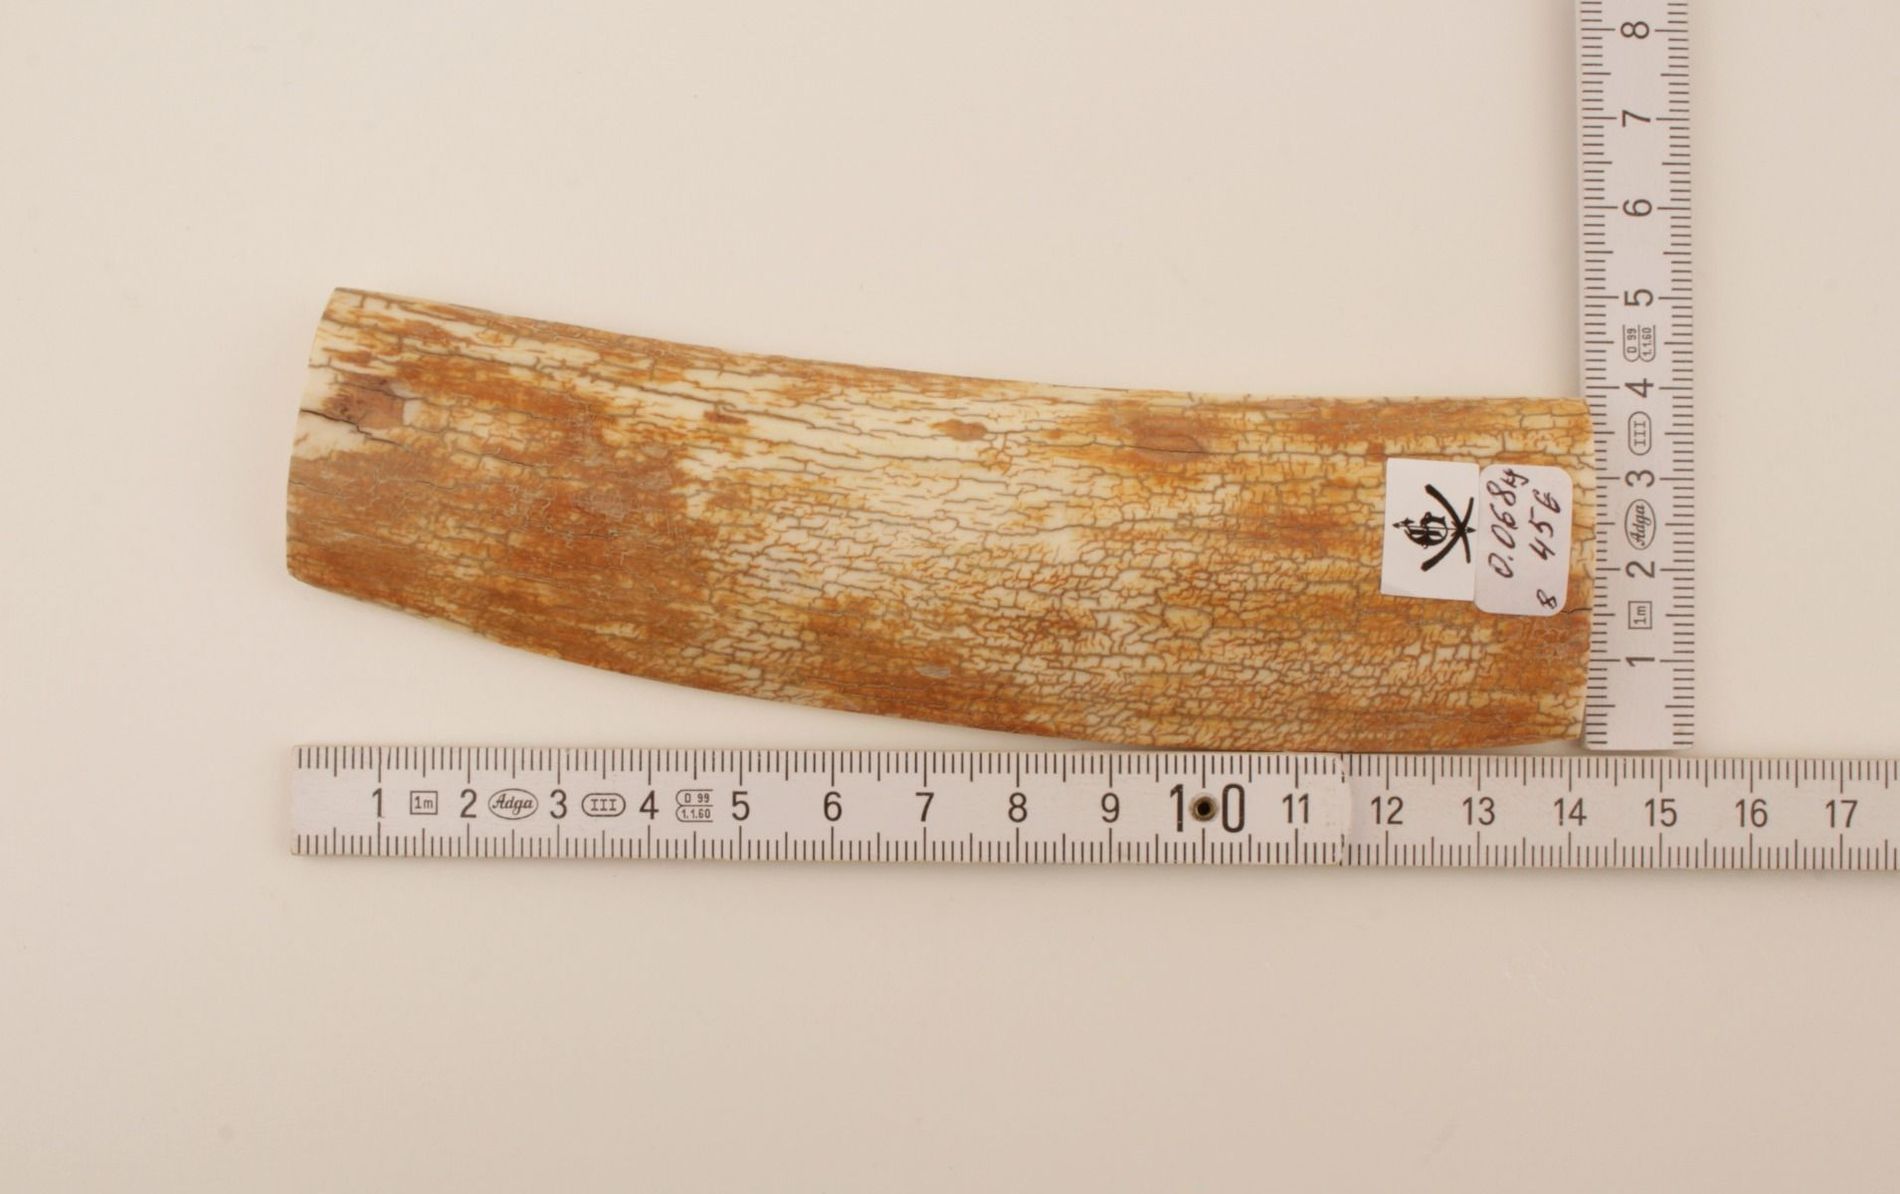 Orange-white mammoth bark